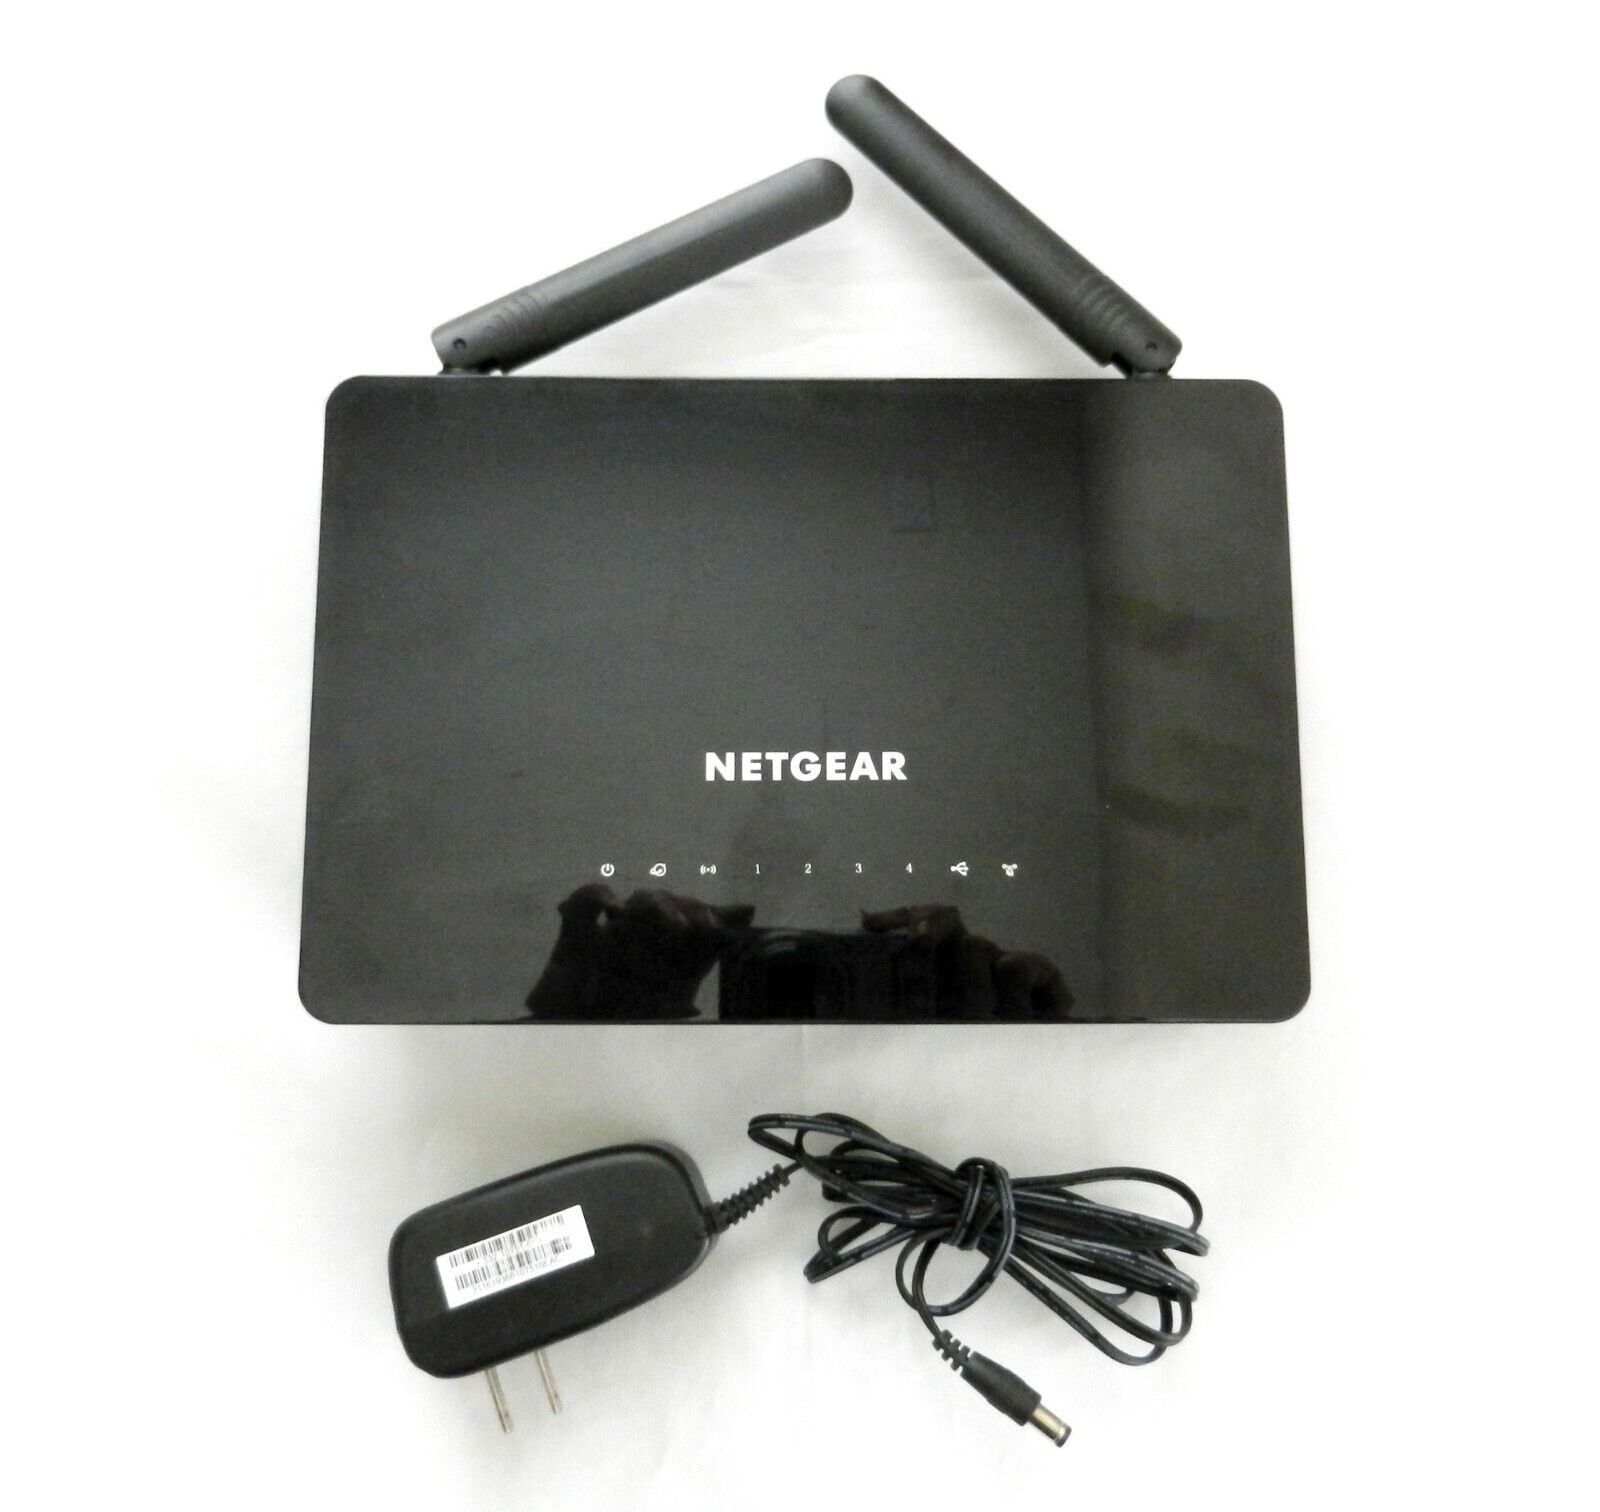 Netgear AC1200 Smart Wifi Router Model #R6220